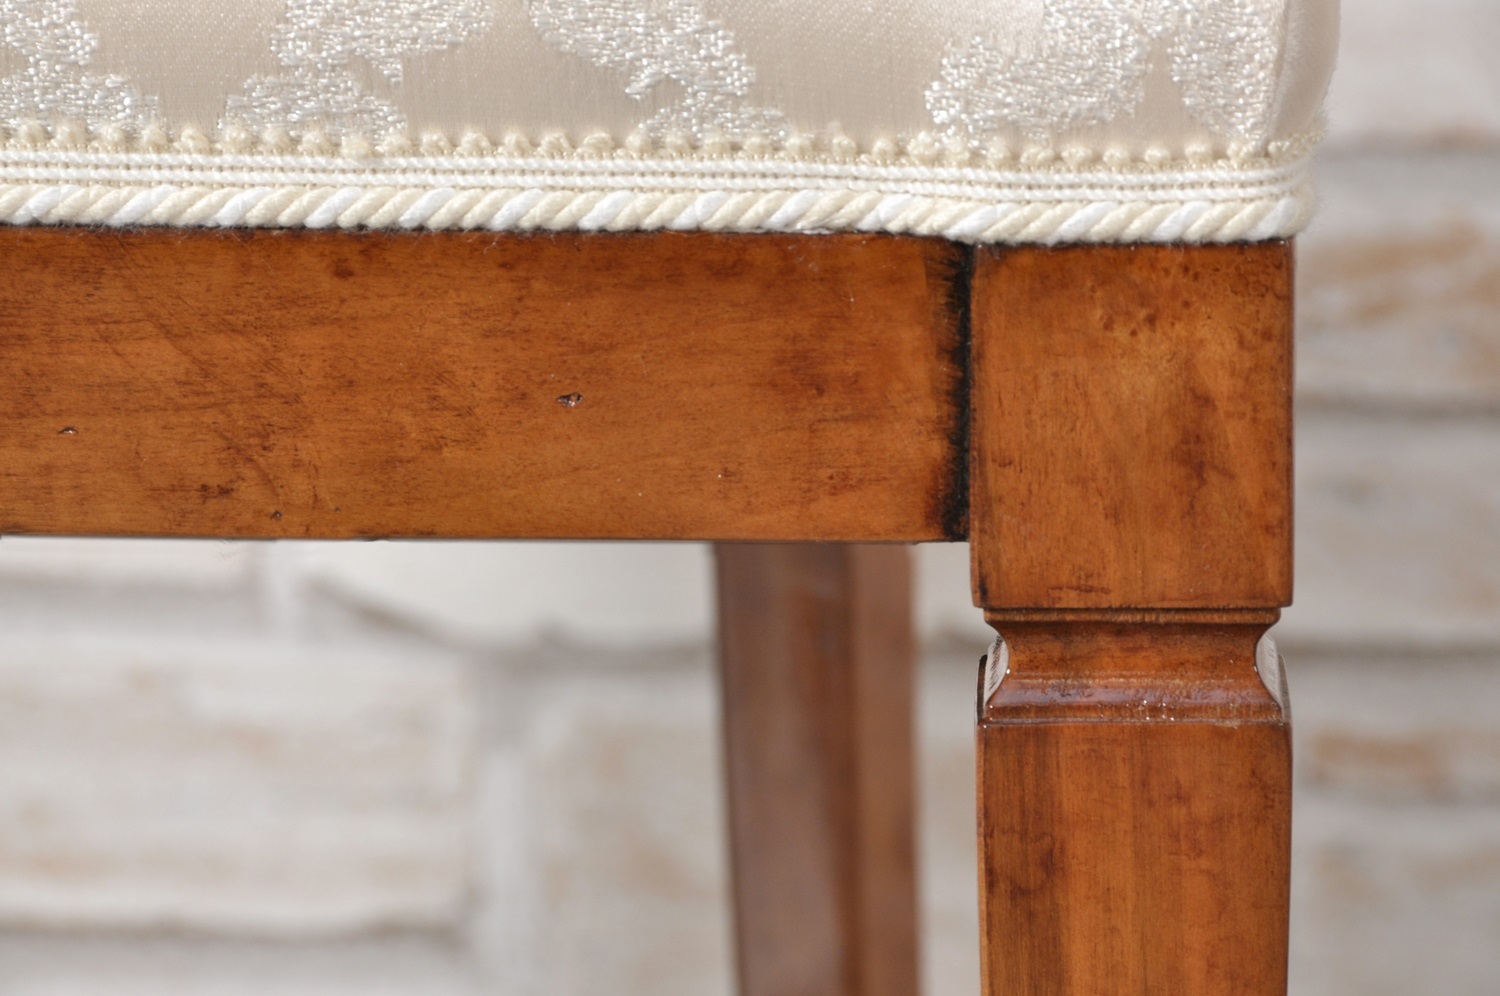 gamba a spillo con gola tipica lavorazione artigianale riprodotta a mano nello stile classico Luigi XVI costruita dal brand di lusso Vangelista mobili 1960 riproduzione dell’originale